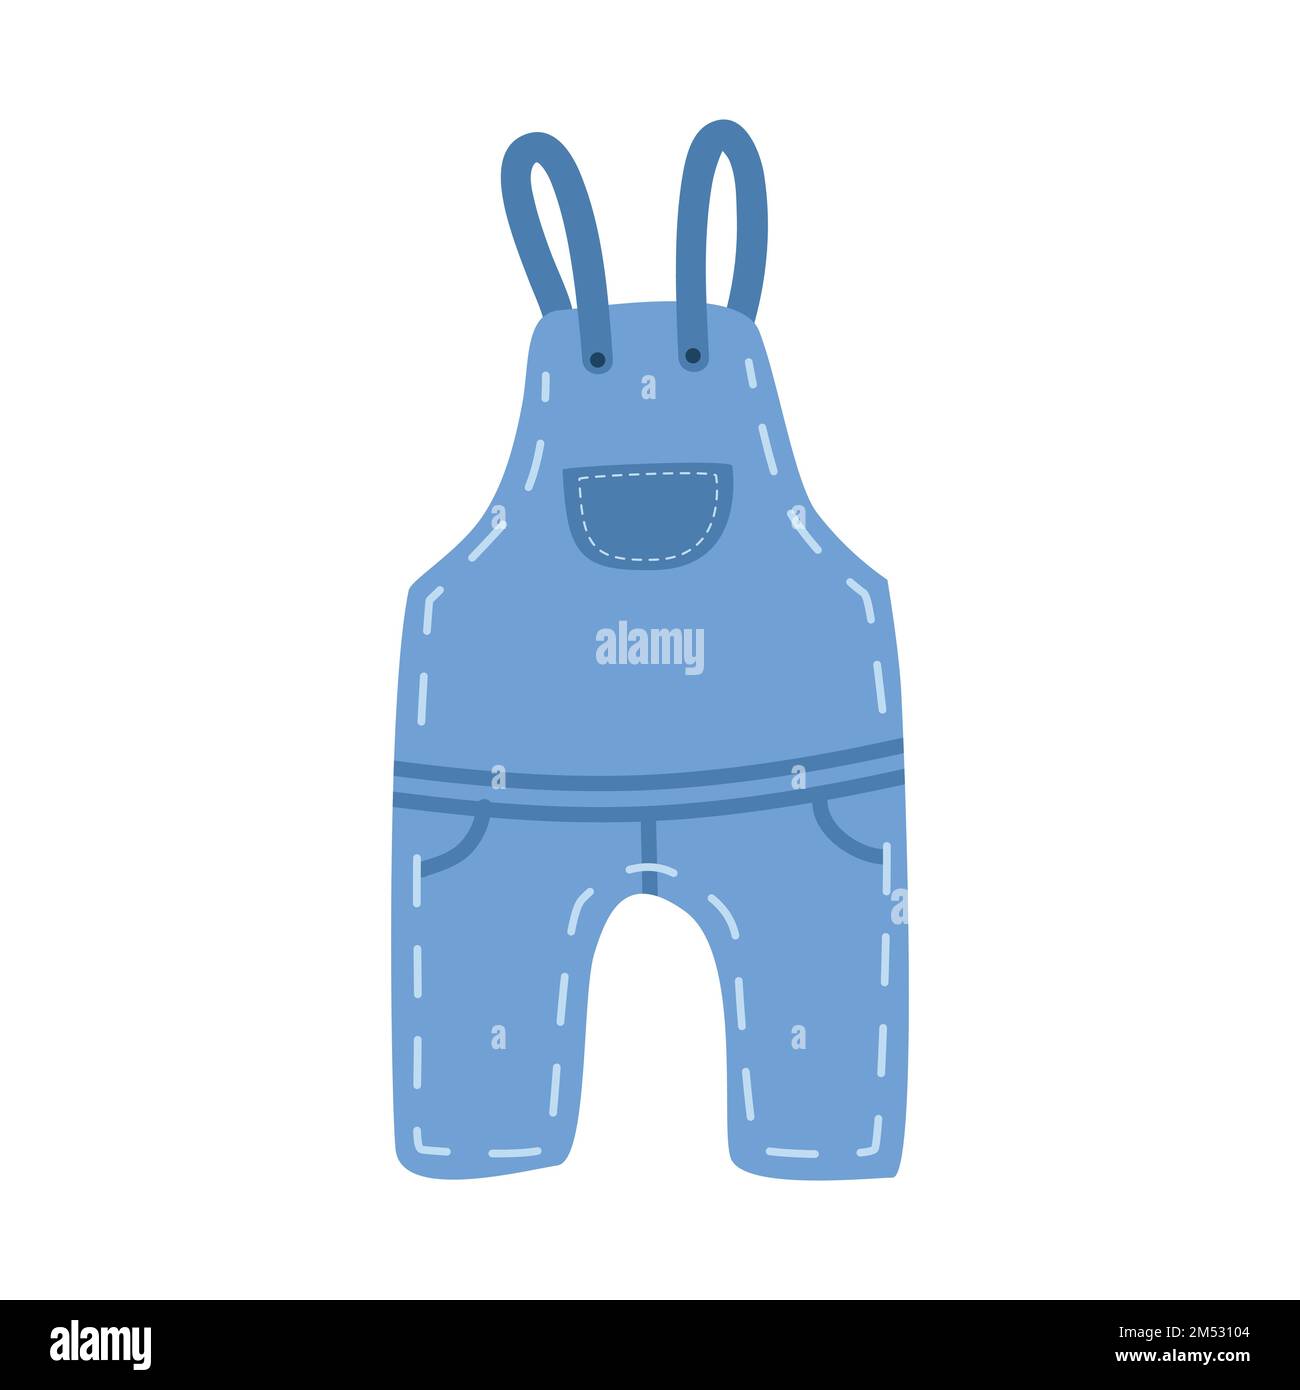 Baby-Jeans-Overall Clipart. Einfache, niedliche, blaue jean-Overall-Vektorzeichnung für Kleinkinder. Baby-Jeansanzug oder Latzhose Cartoon handgezeichnet Stock Vektor